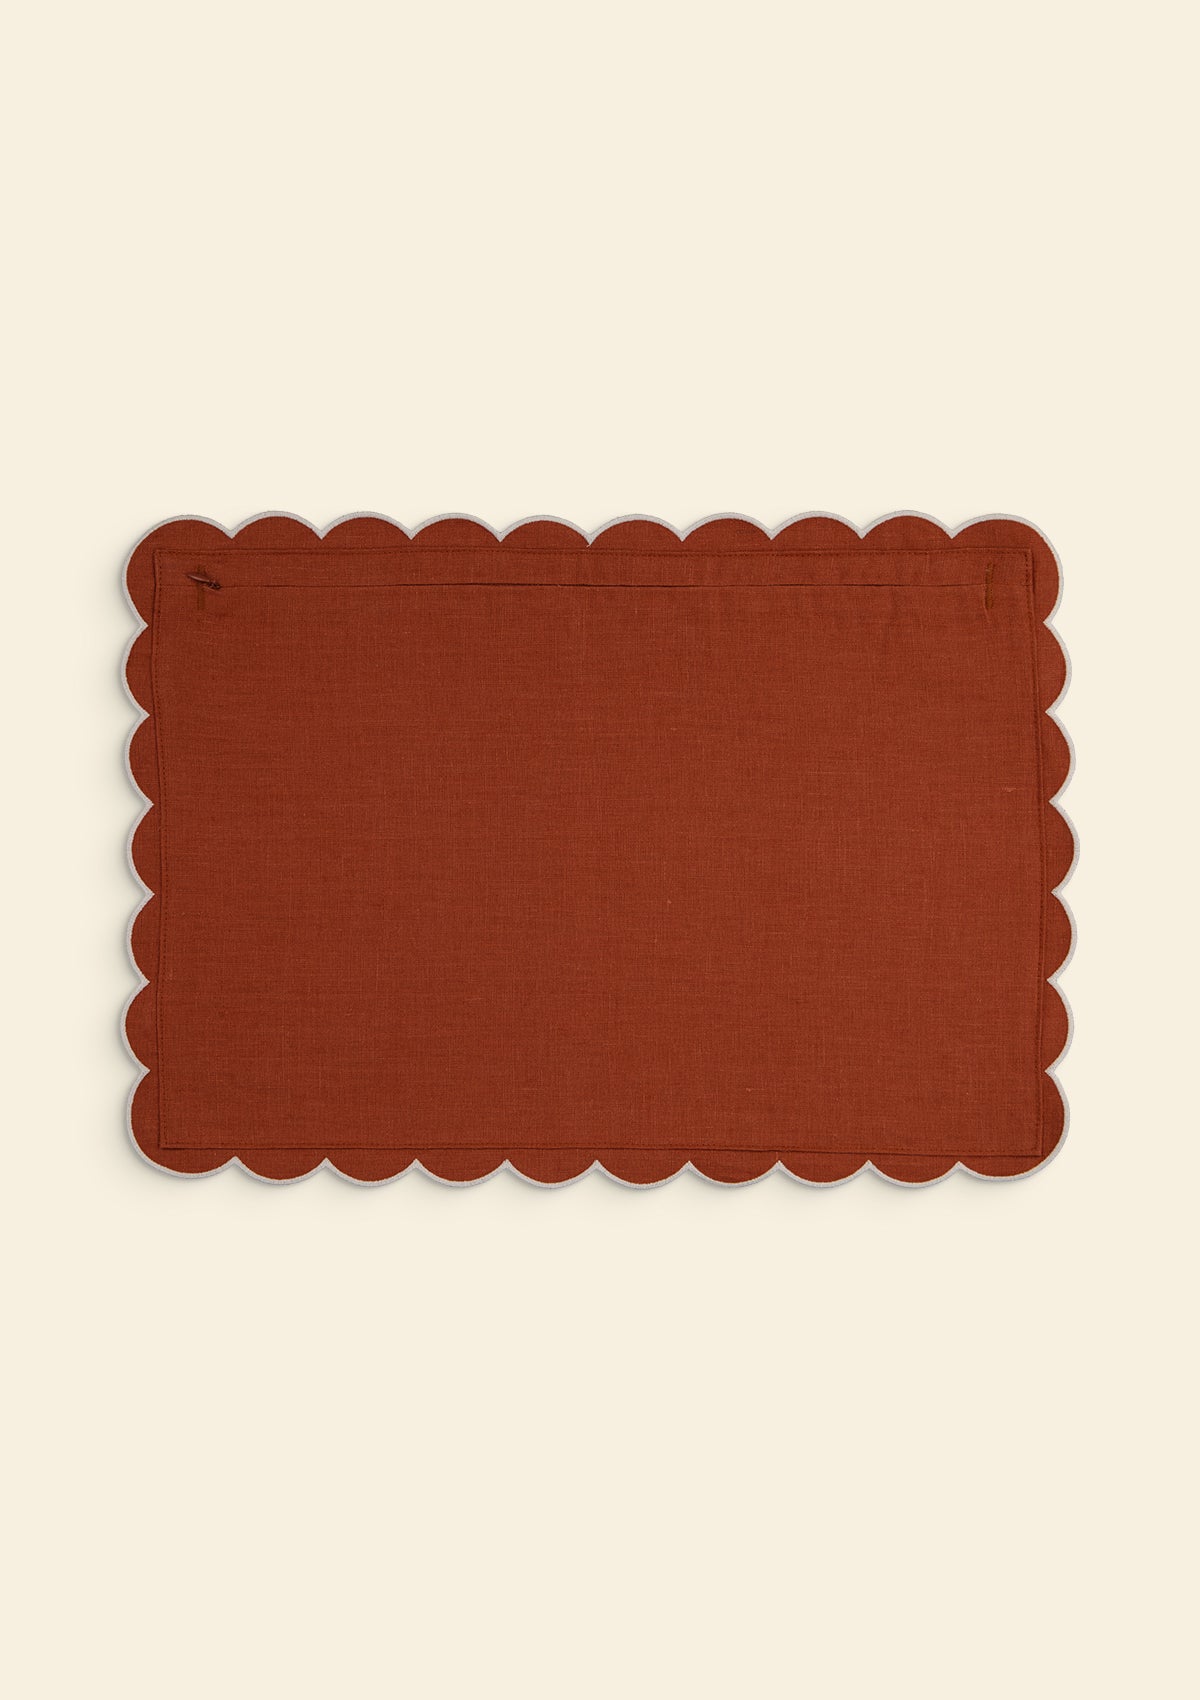 Scalloped rectangular linen cushion Red ocher & White